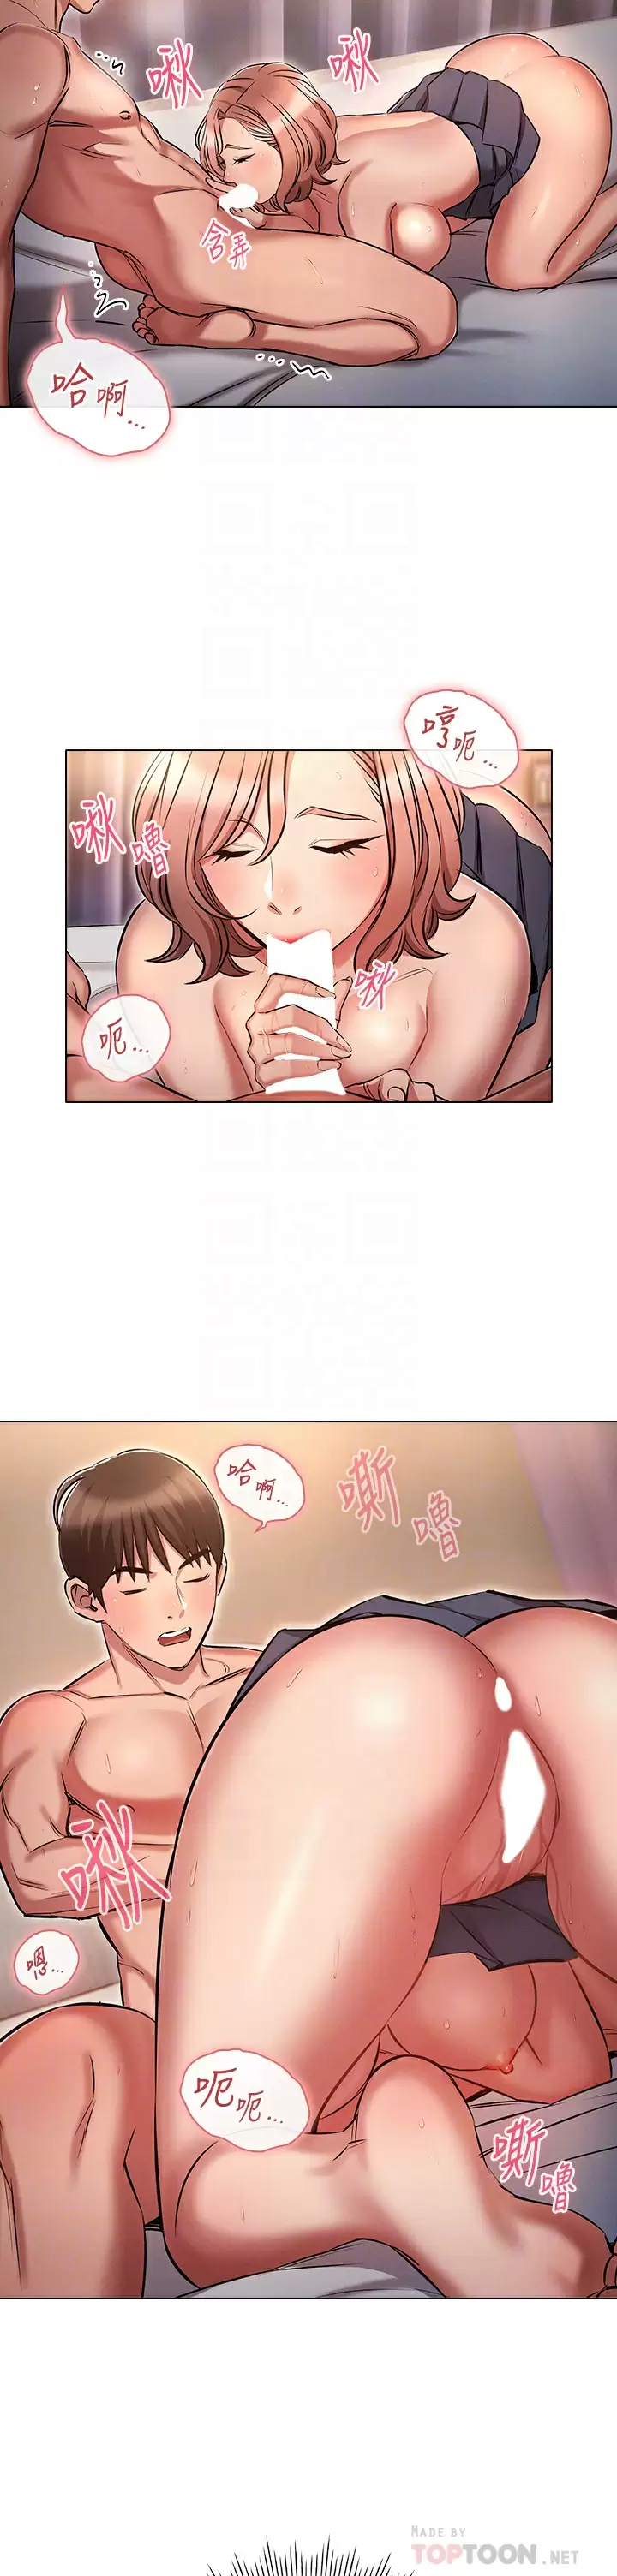 韩国污漫画 魯蛇的多重宇宙 第14话 挑战窗边暴露性爱! 14